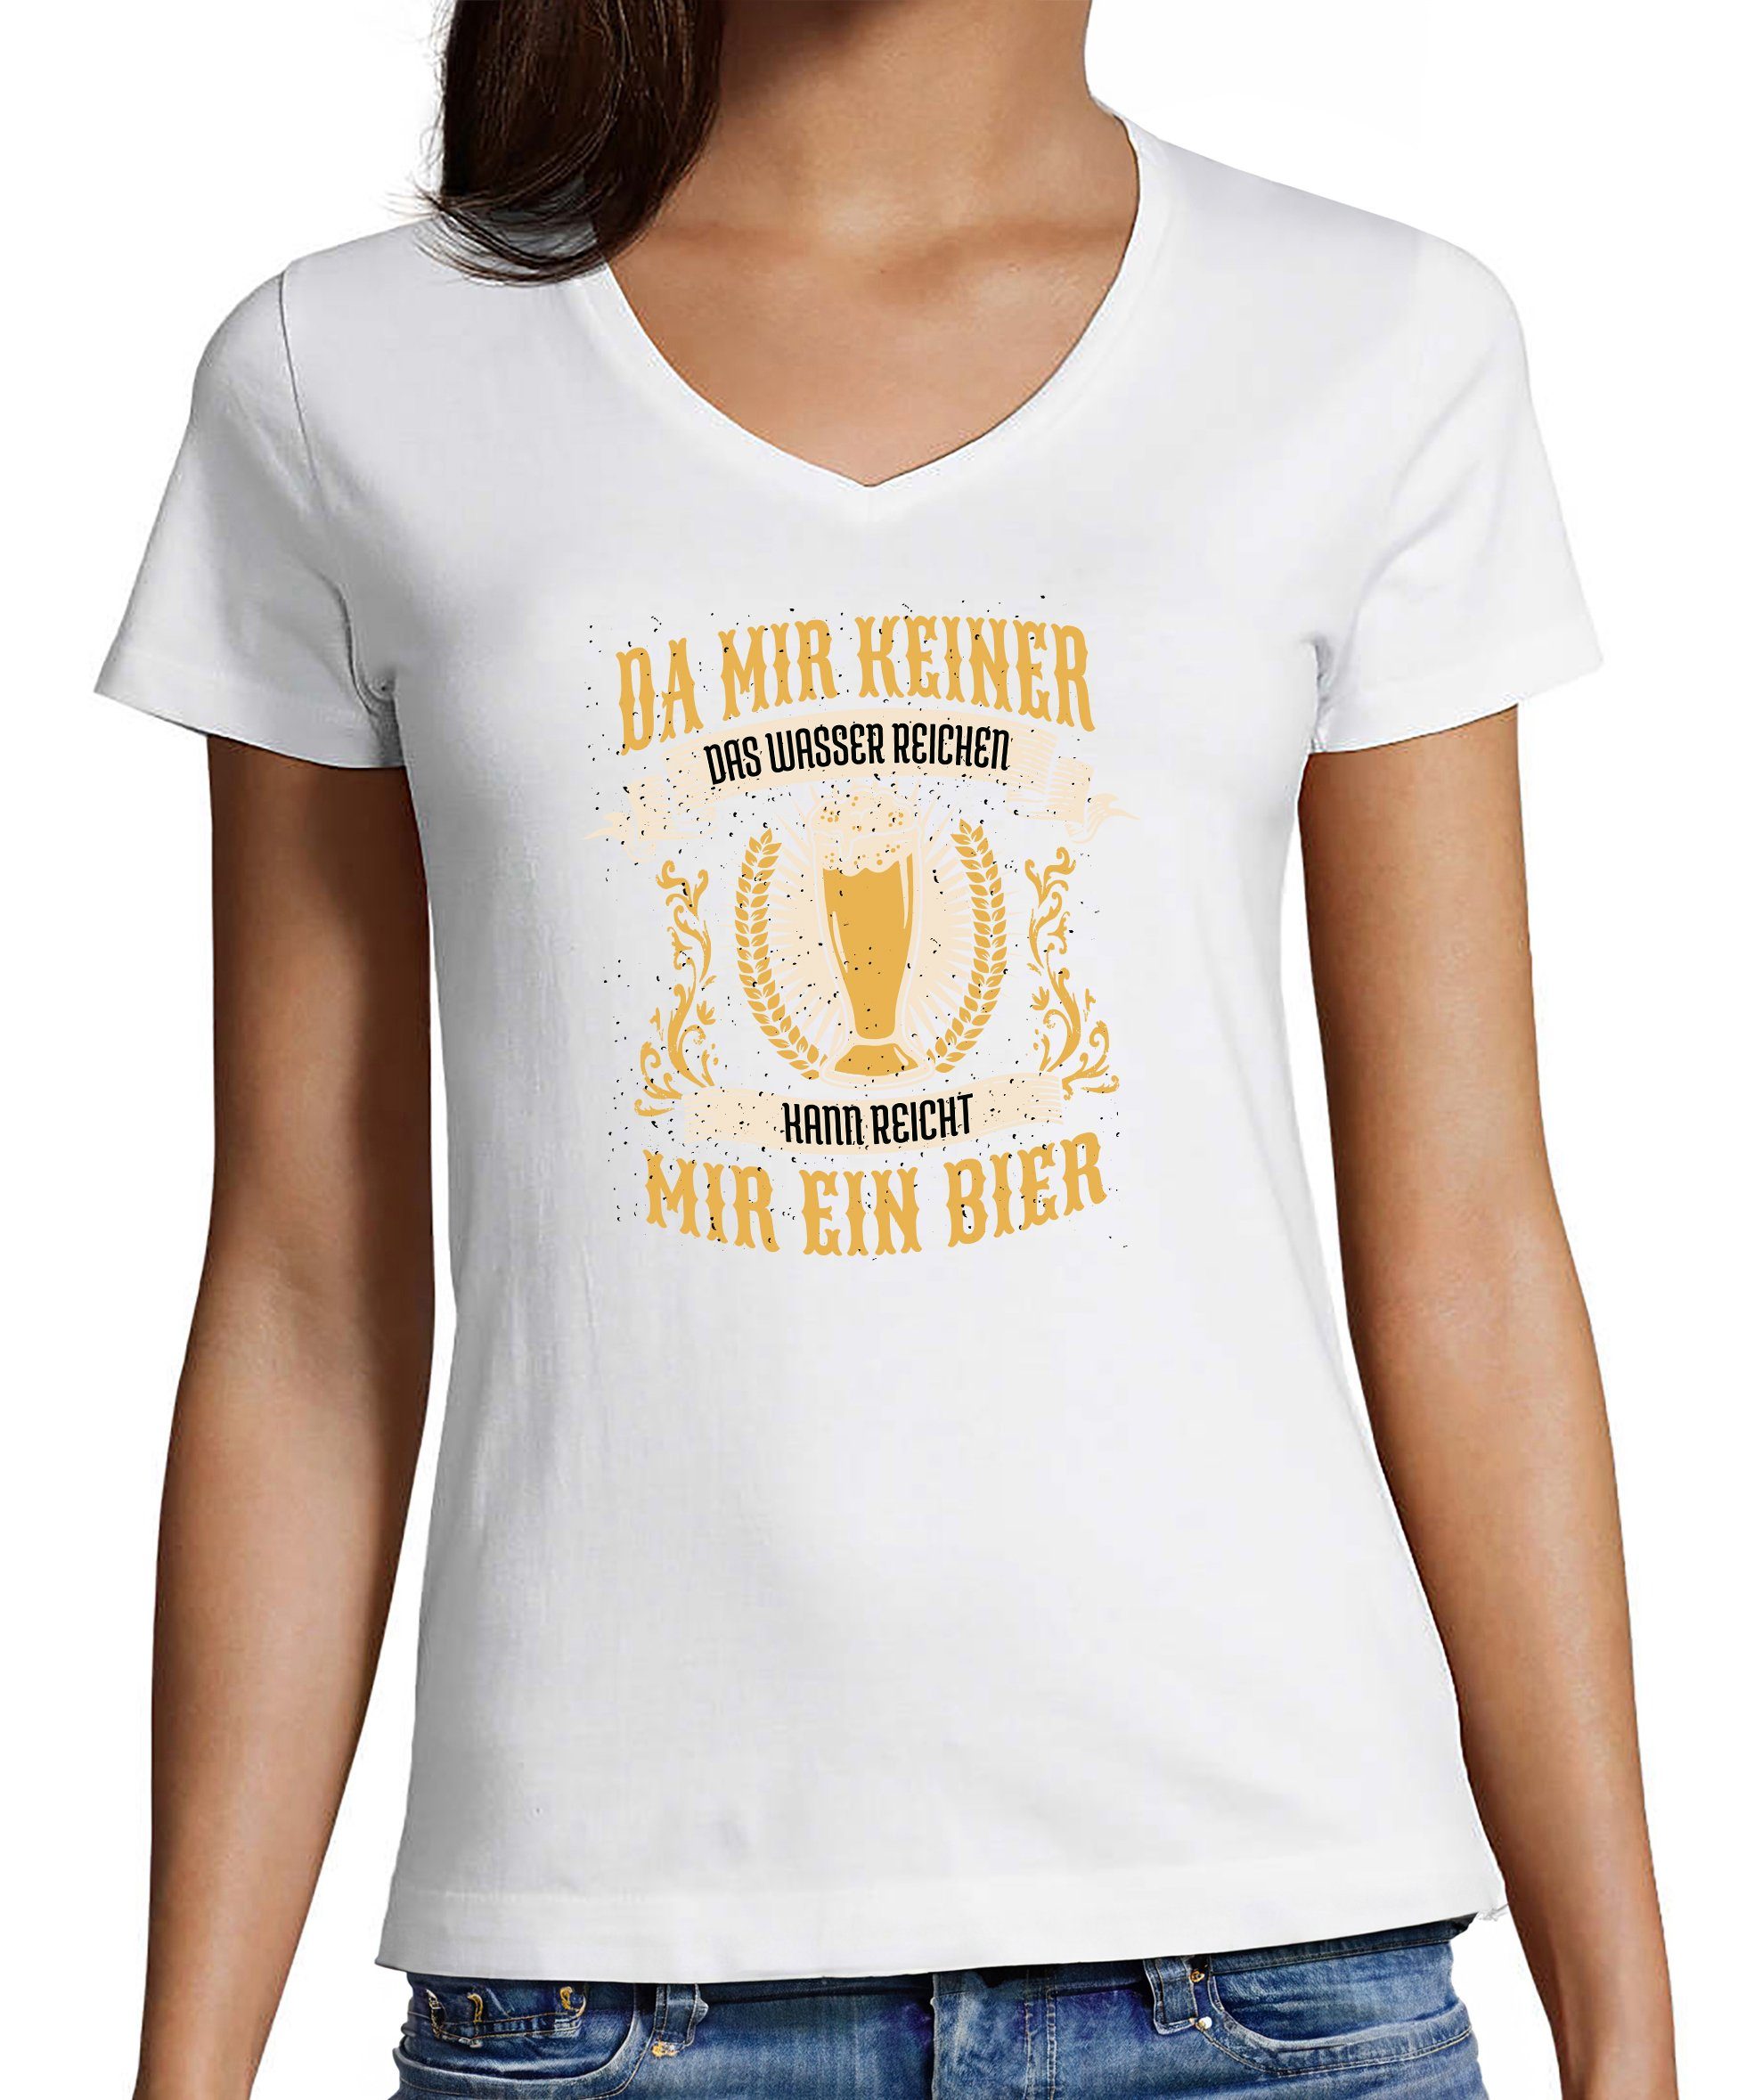 MyDesign24 T-Shirt Damen Oktoberfest T-Shirt - Reicht mir ein Bier V-Ausschnitt Print Shirt Slim Fit, i308 weiss